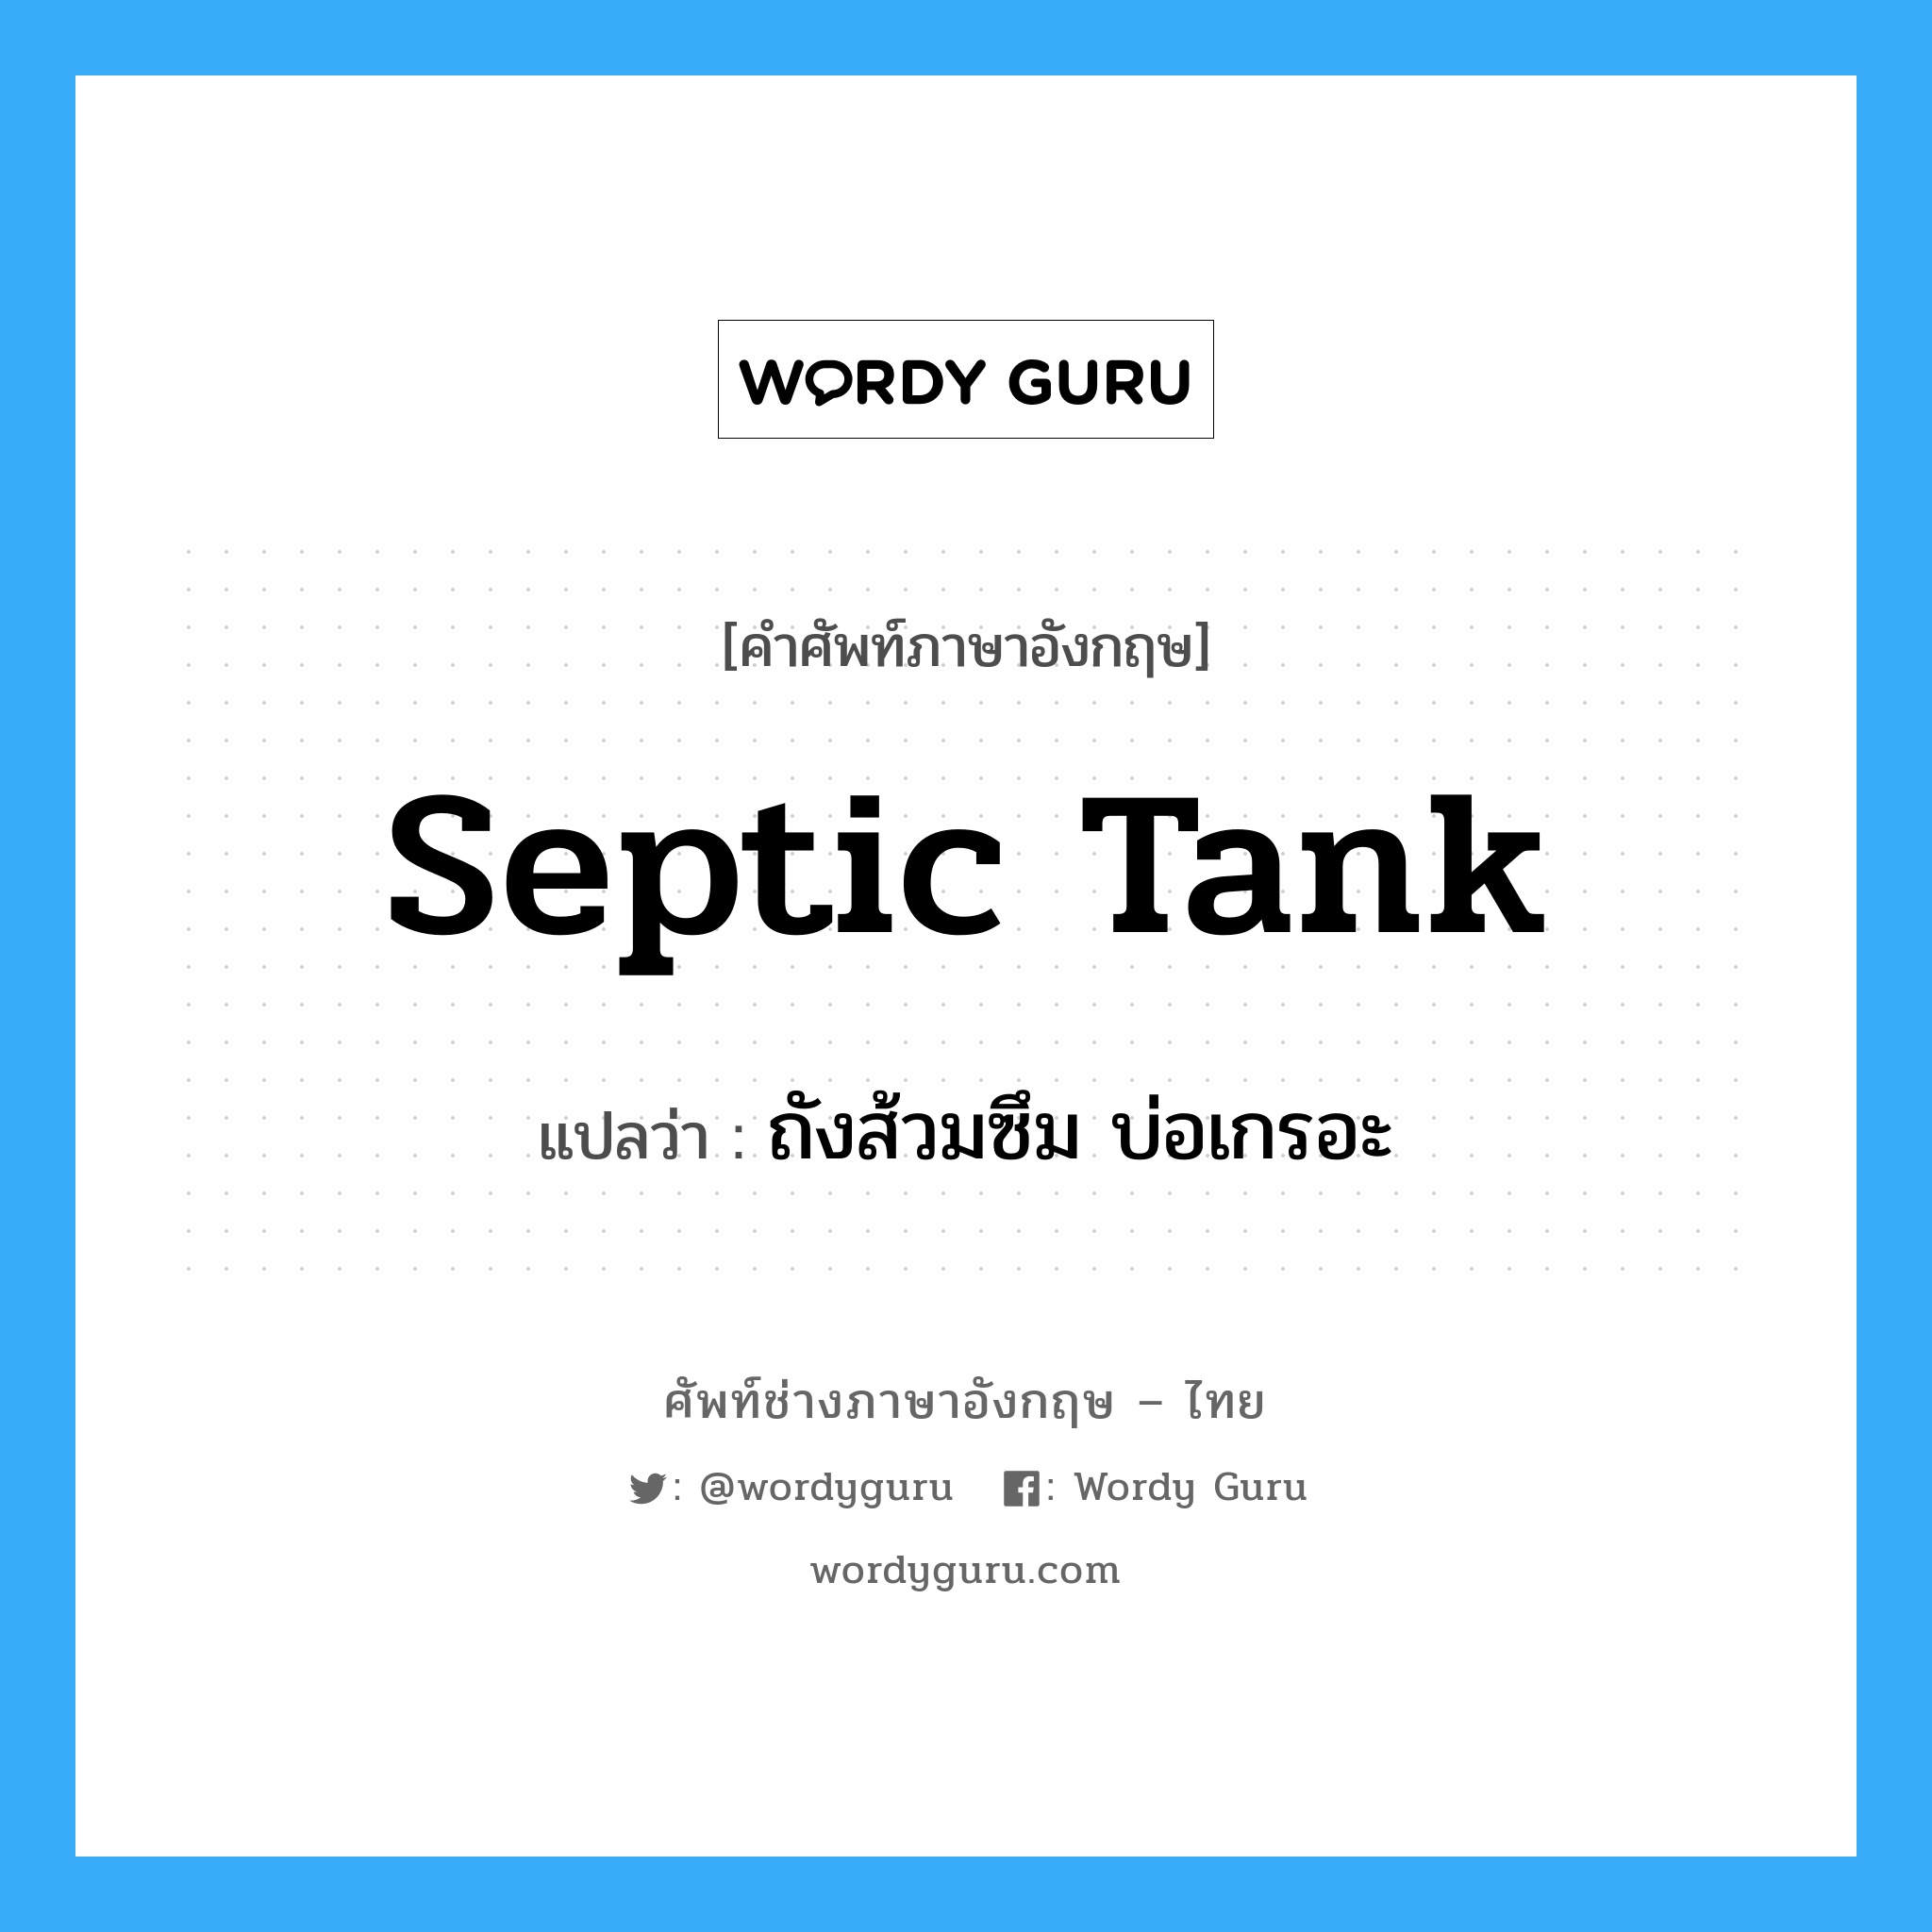 ถังส้วมซึม บ่อเกรอะ ภาษาอังกฤษ?, คำศัพท์ช่างภาษาอังกฤษ - ไทย ถังส้วมซึม บ่อเกรอะ คำศัพท์ภาษาอังกฤษ ถังส้วมซึม บ่อเกรอะ แปลว่า septic tank